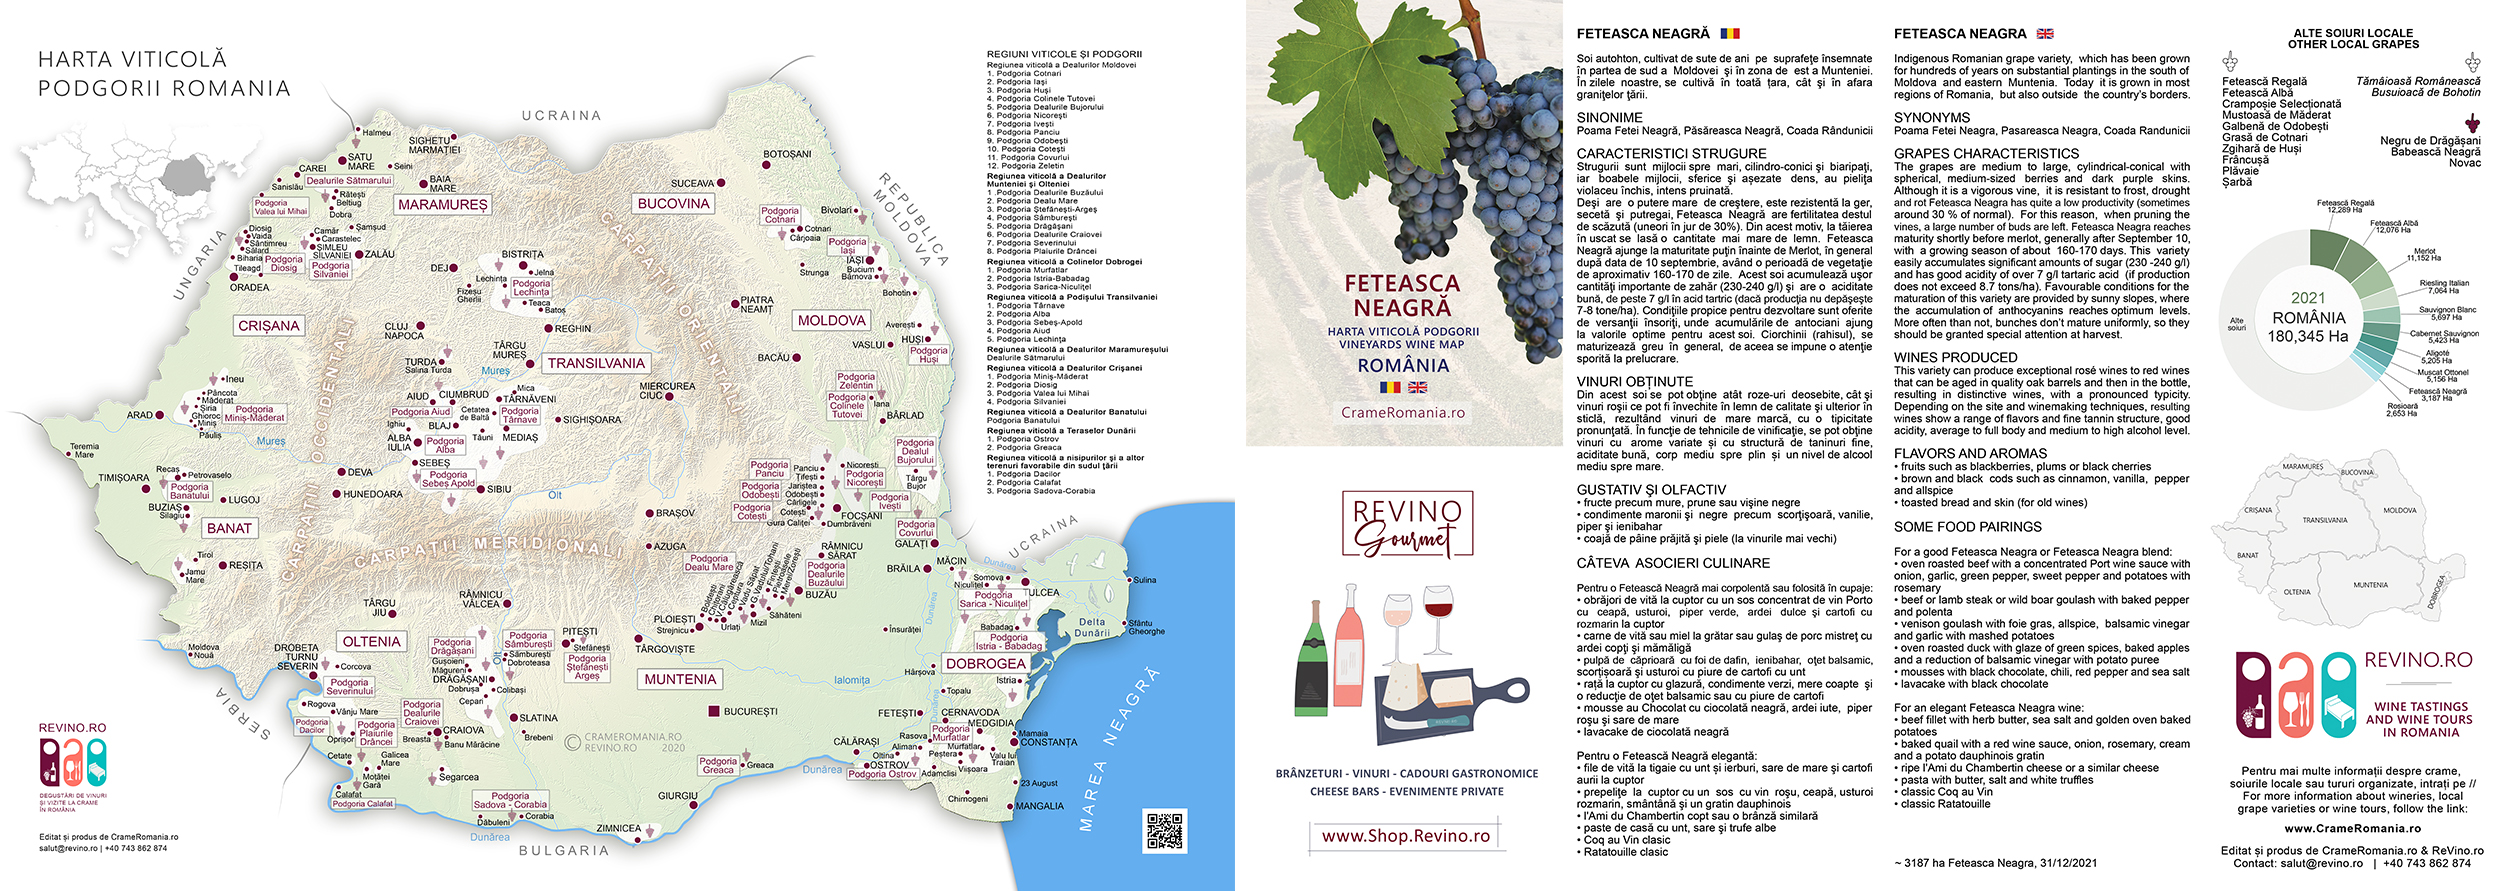 Harta viticola fn 22